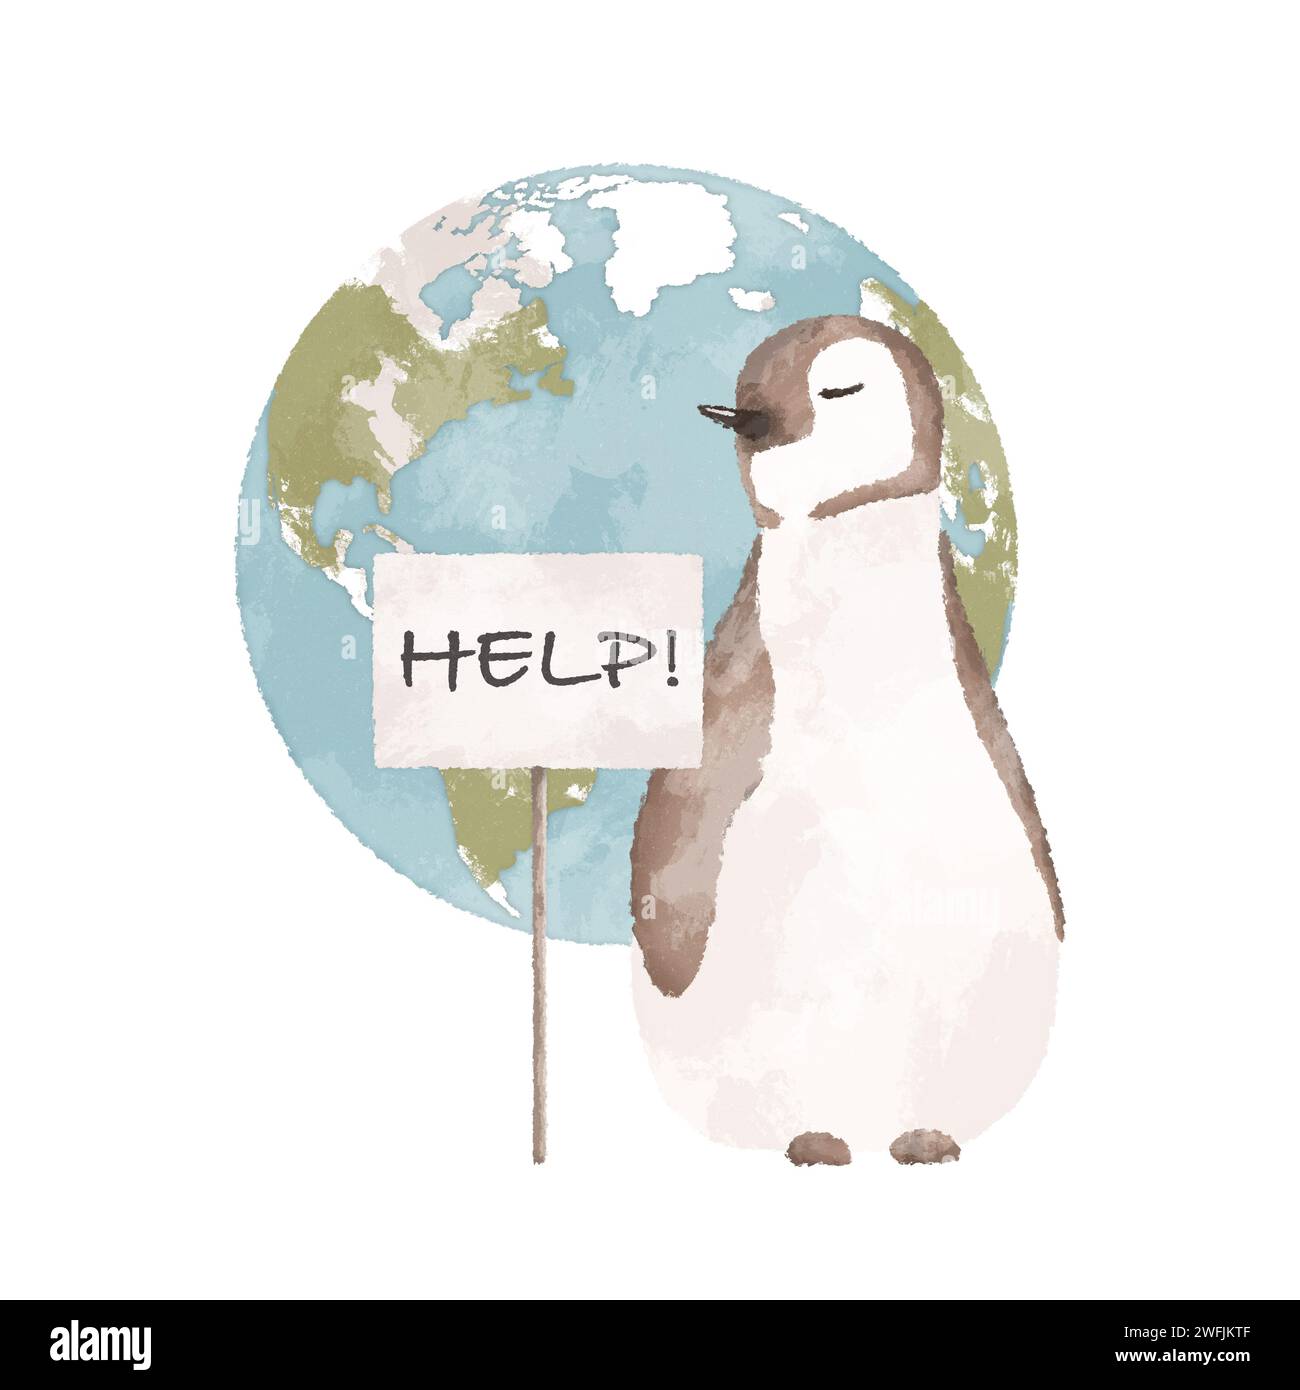 Pinguin mit einem Hilfeschild und einer Illustration des Planeten Erde. Konzept der globalen Erwärmung. Illustration des Klimawandels. Stockfoto